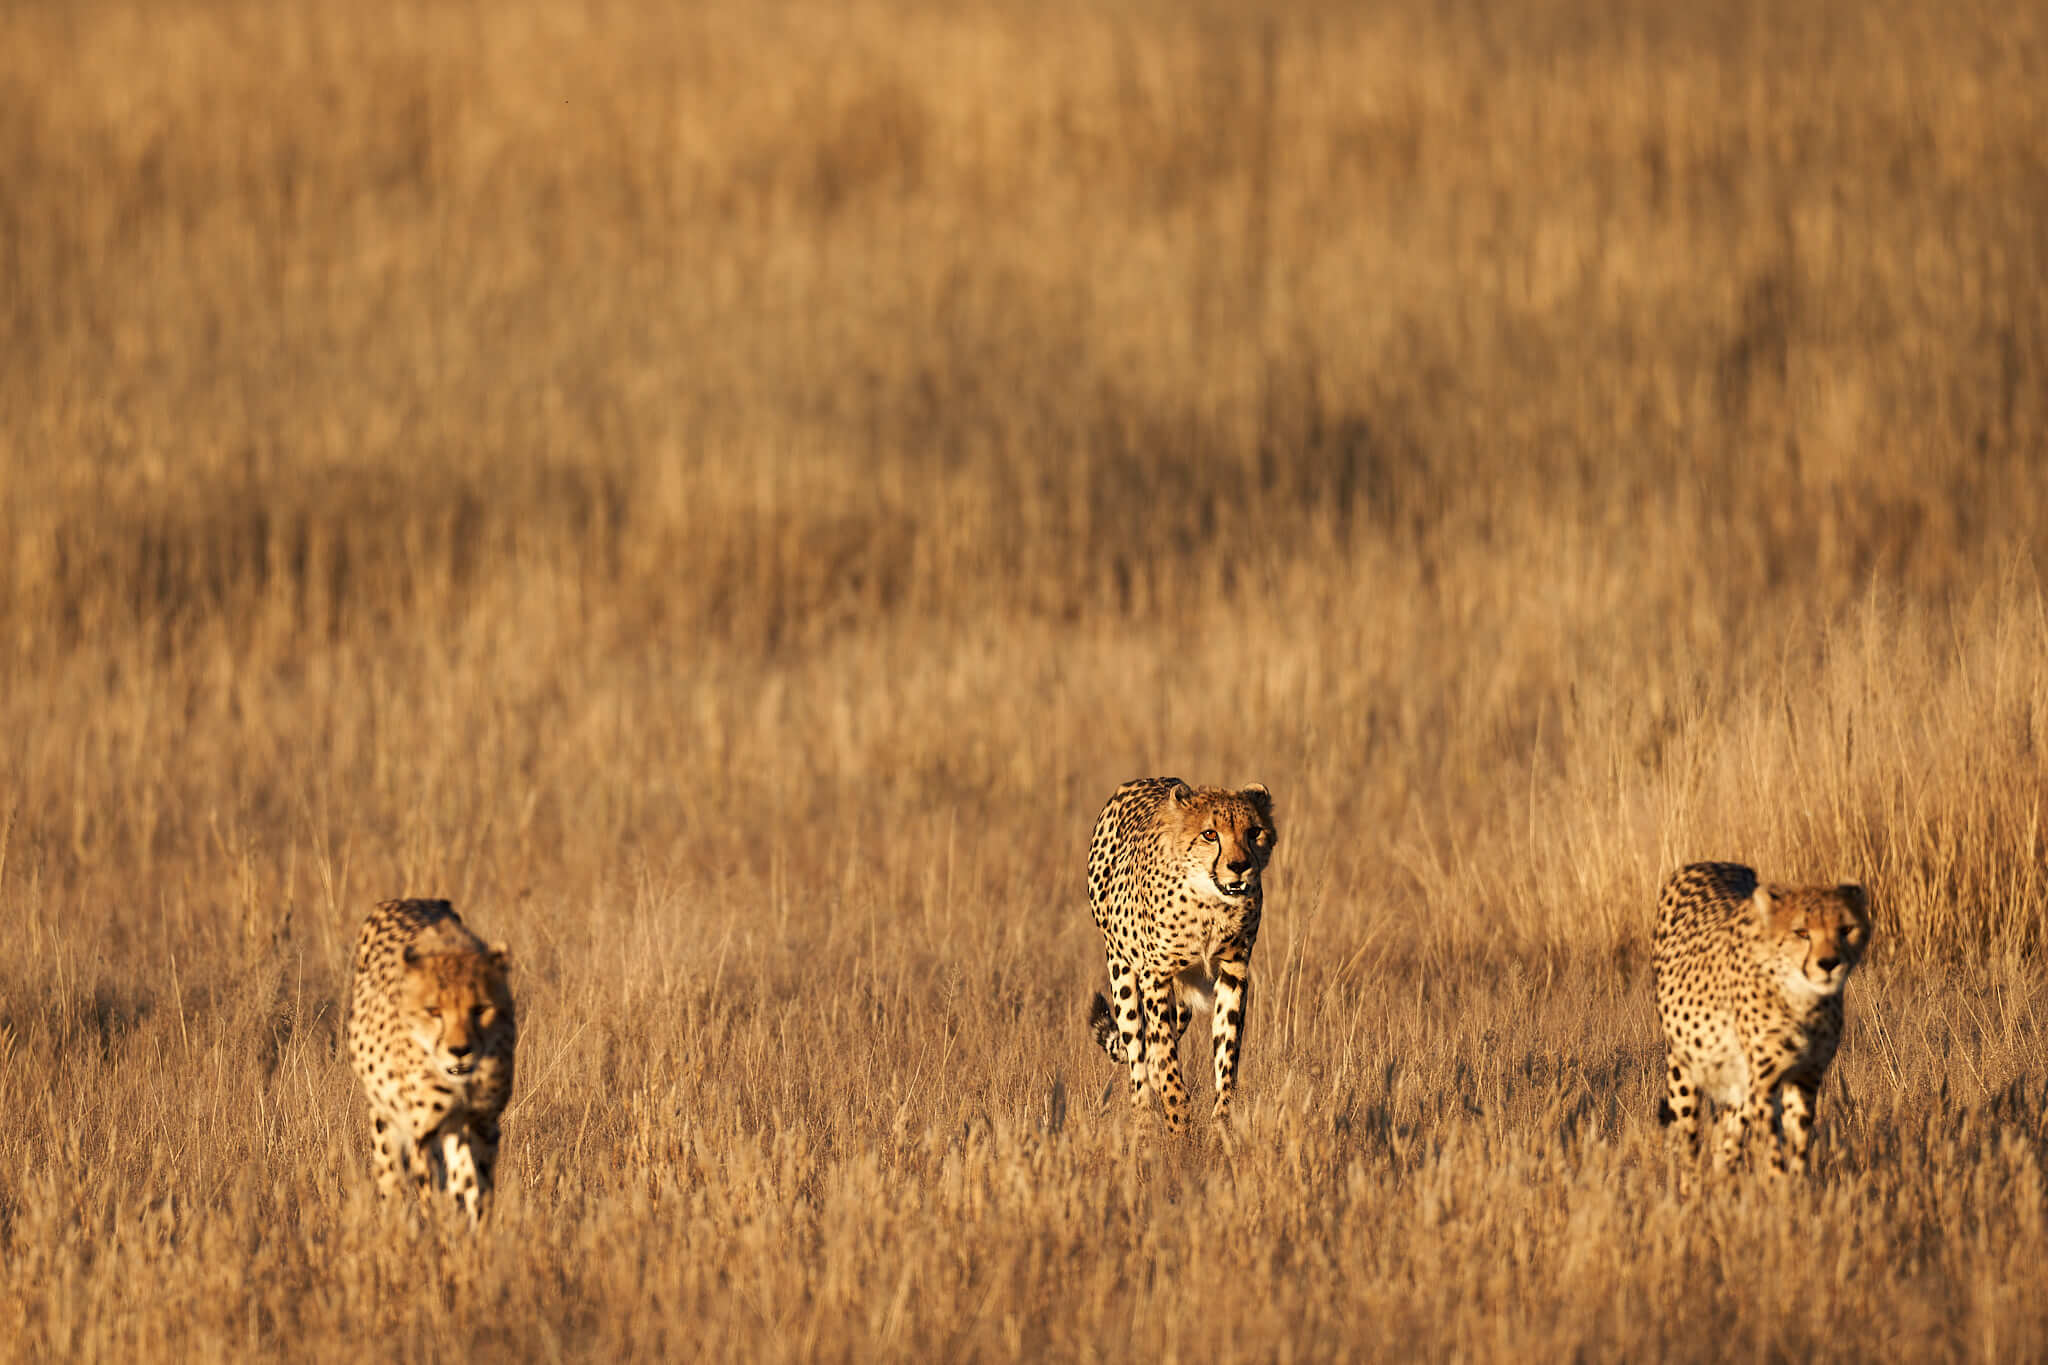 Das Bild zeigt drei Geparden im hohen Gras